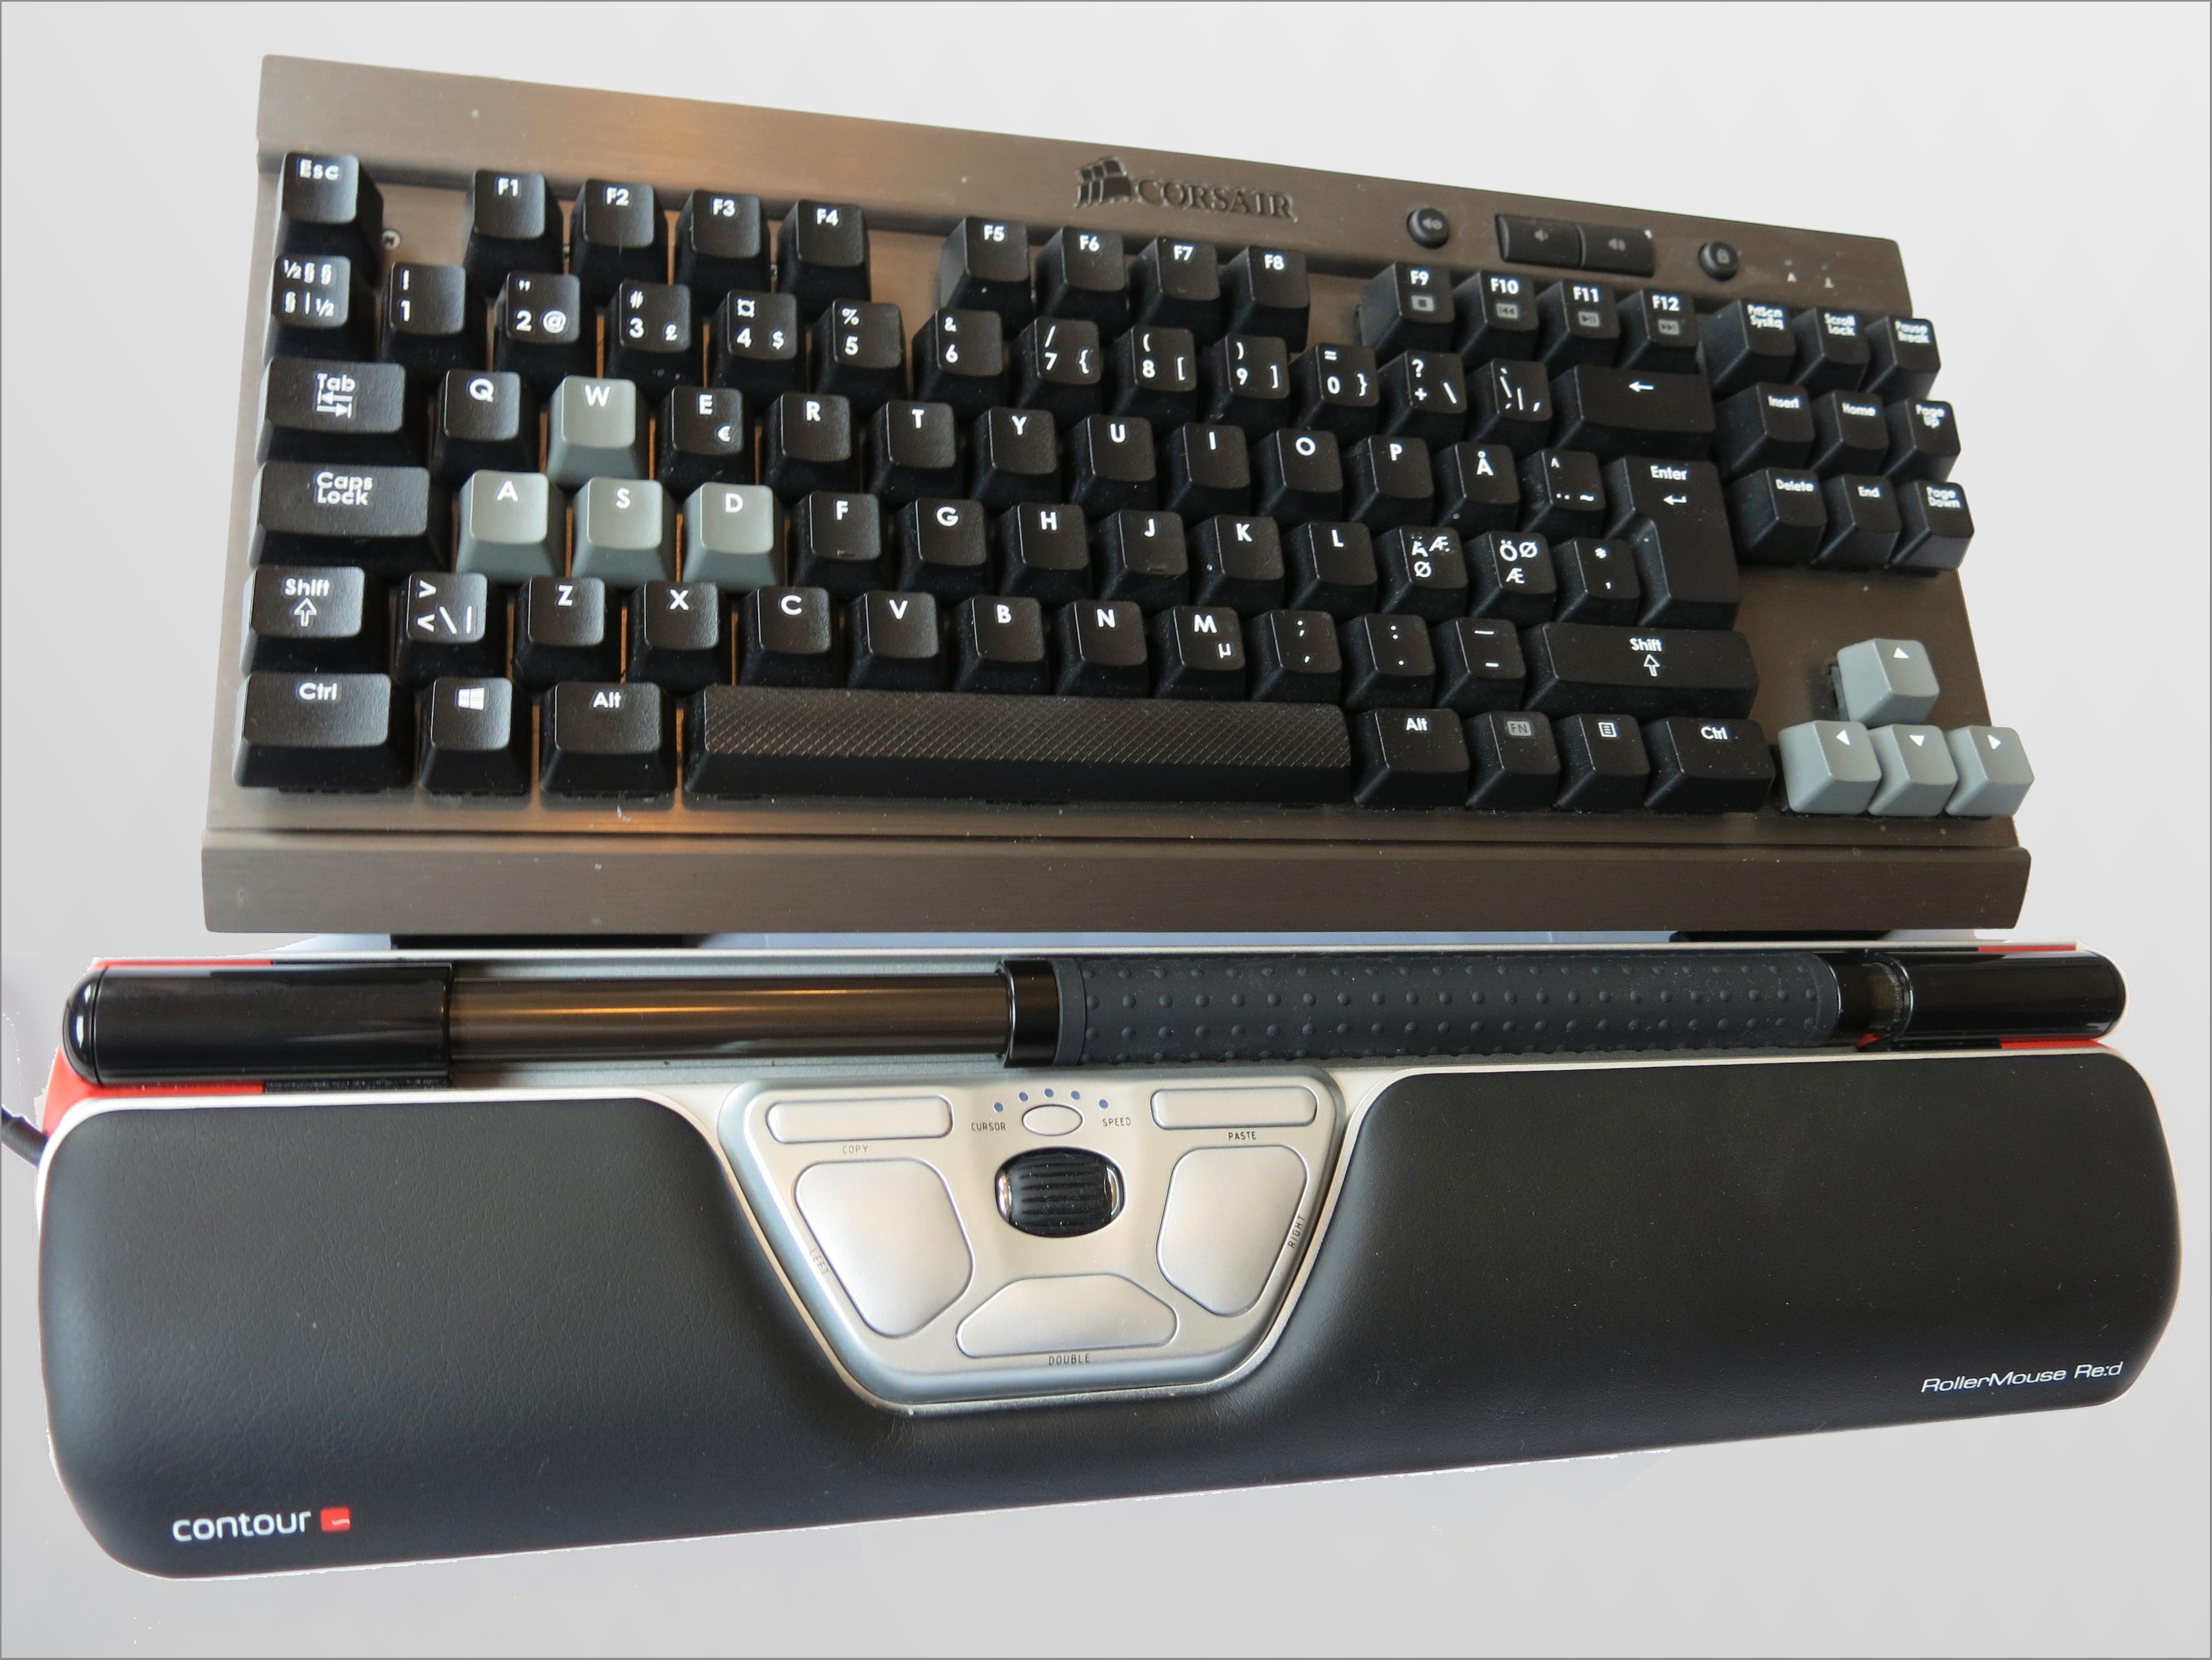 Du kan stille bredden til festestykkene slik at rullemusen fungerer til alle typer tastaturer.Foto: Torstein Sørnes, Hardware.no